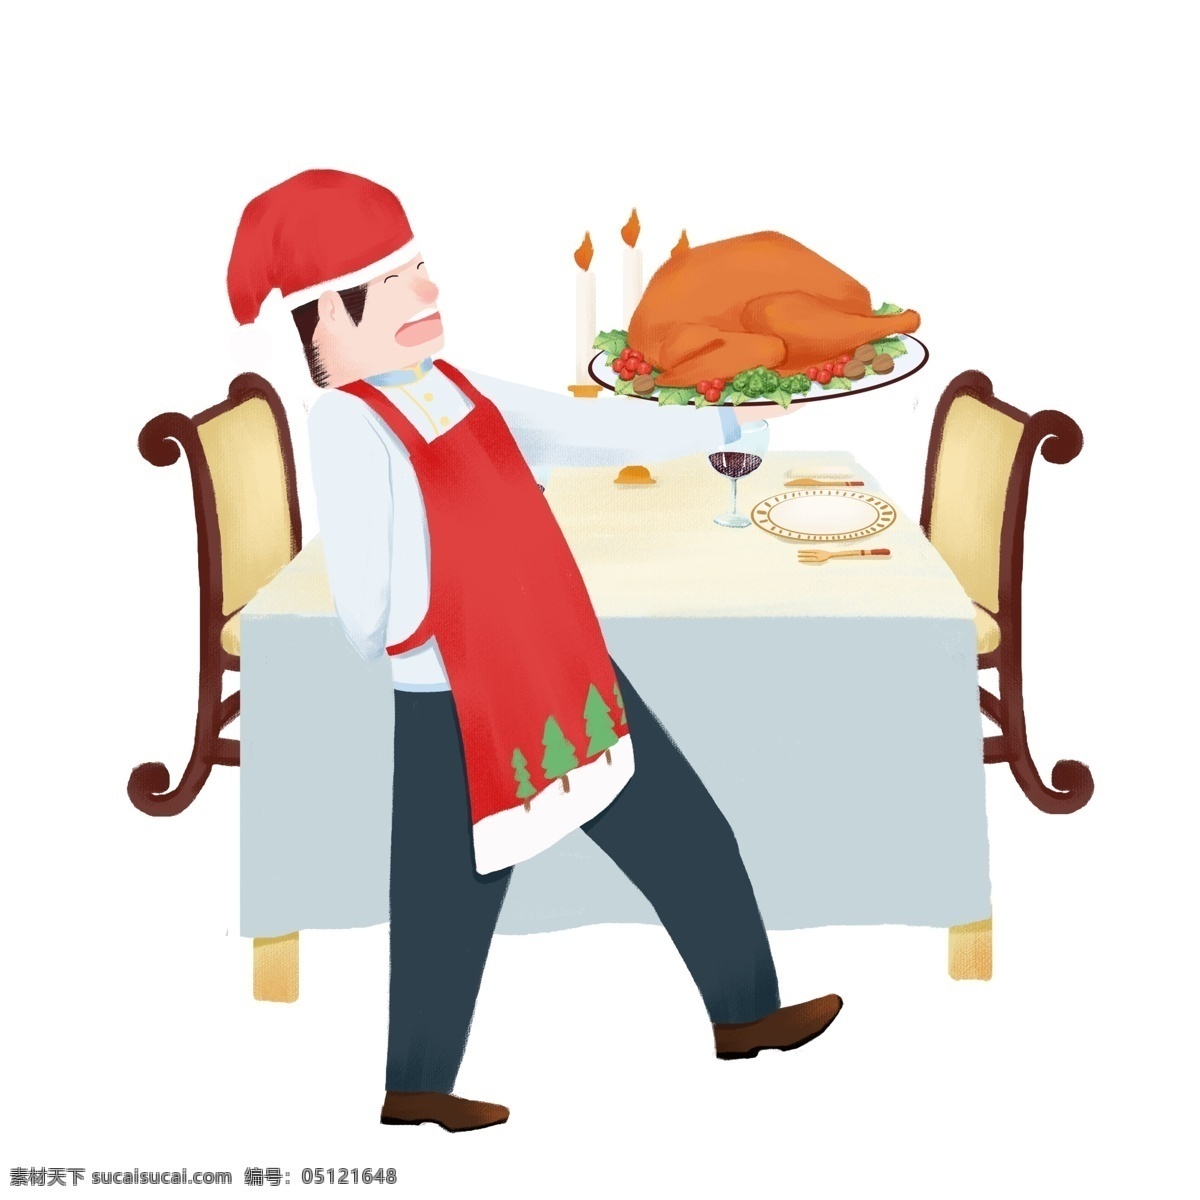 手绘 圣诞 晚宴 火鸡 插画 美味的火鸡 诱人的火鸡 红色的帽子 红色的围裙 手绘火鸡插画 卡通插画